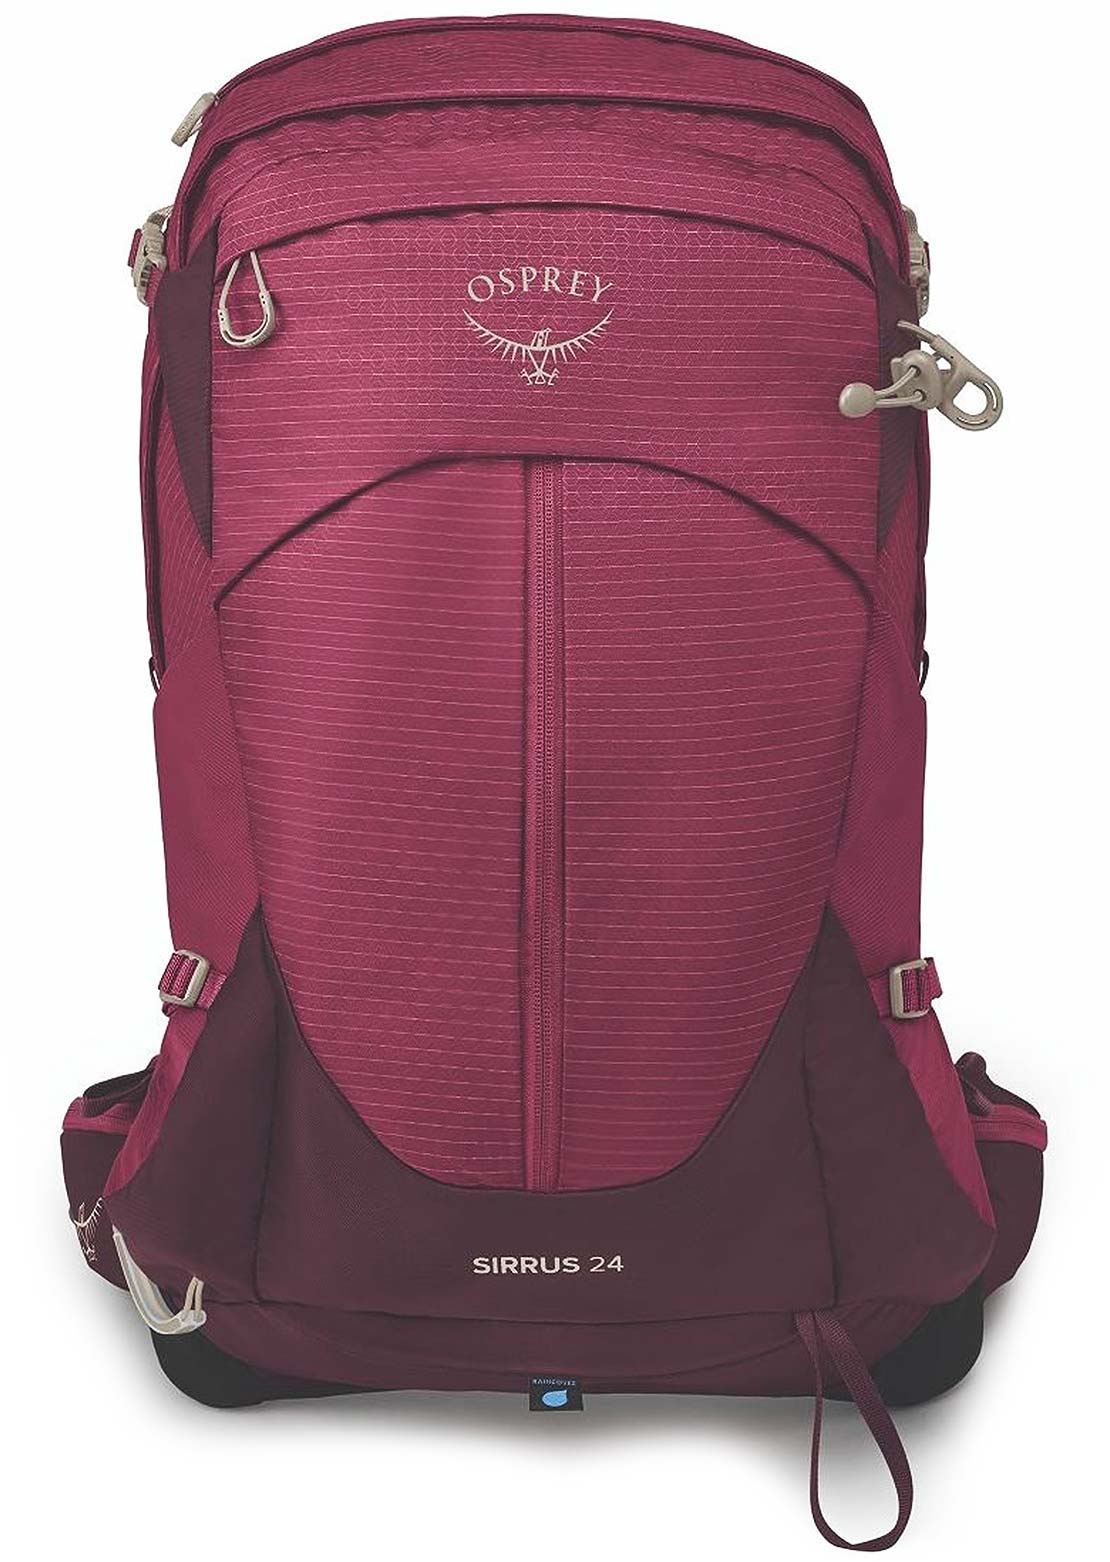 Osprey Women&#39;s Sirrus 34 Hiking Backpack Elderberry Purple/Chiru Tan